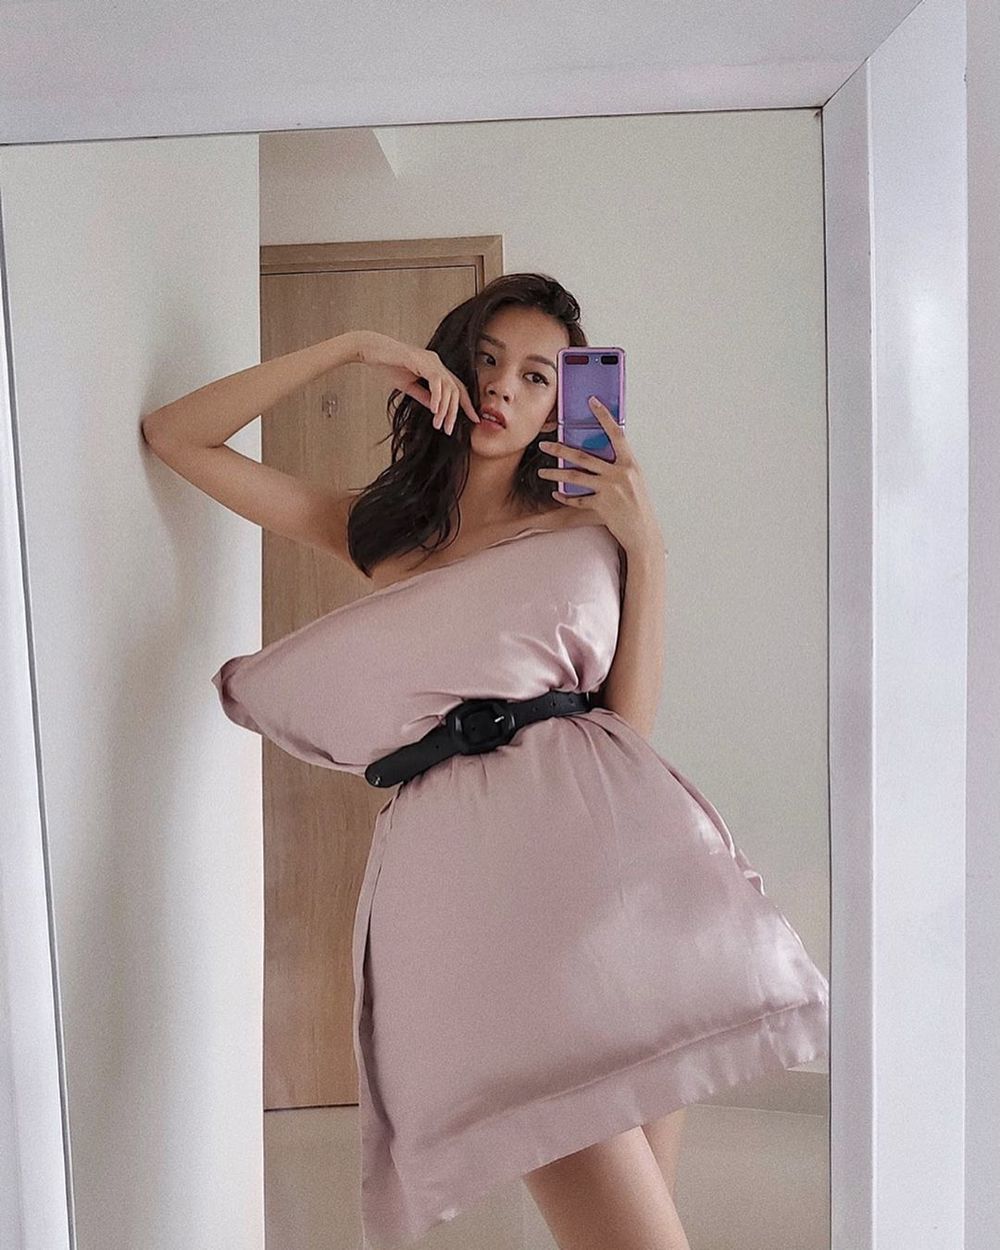  
Phí Phương Anh dùng mẫu gối tím hồng, tương đồng với màu điện thoại người đẹp sử dụng. (Ảnh: Instagram nhân vật)